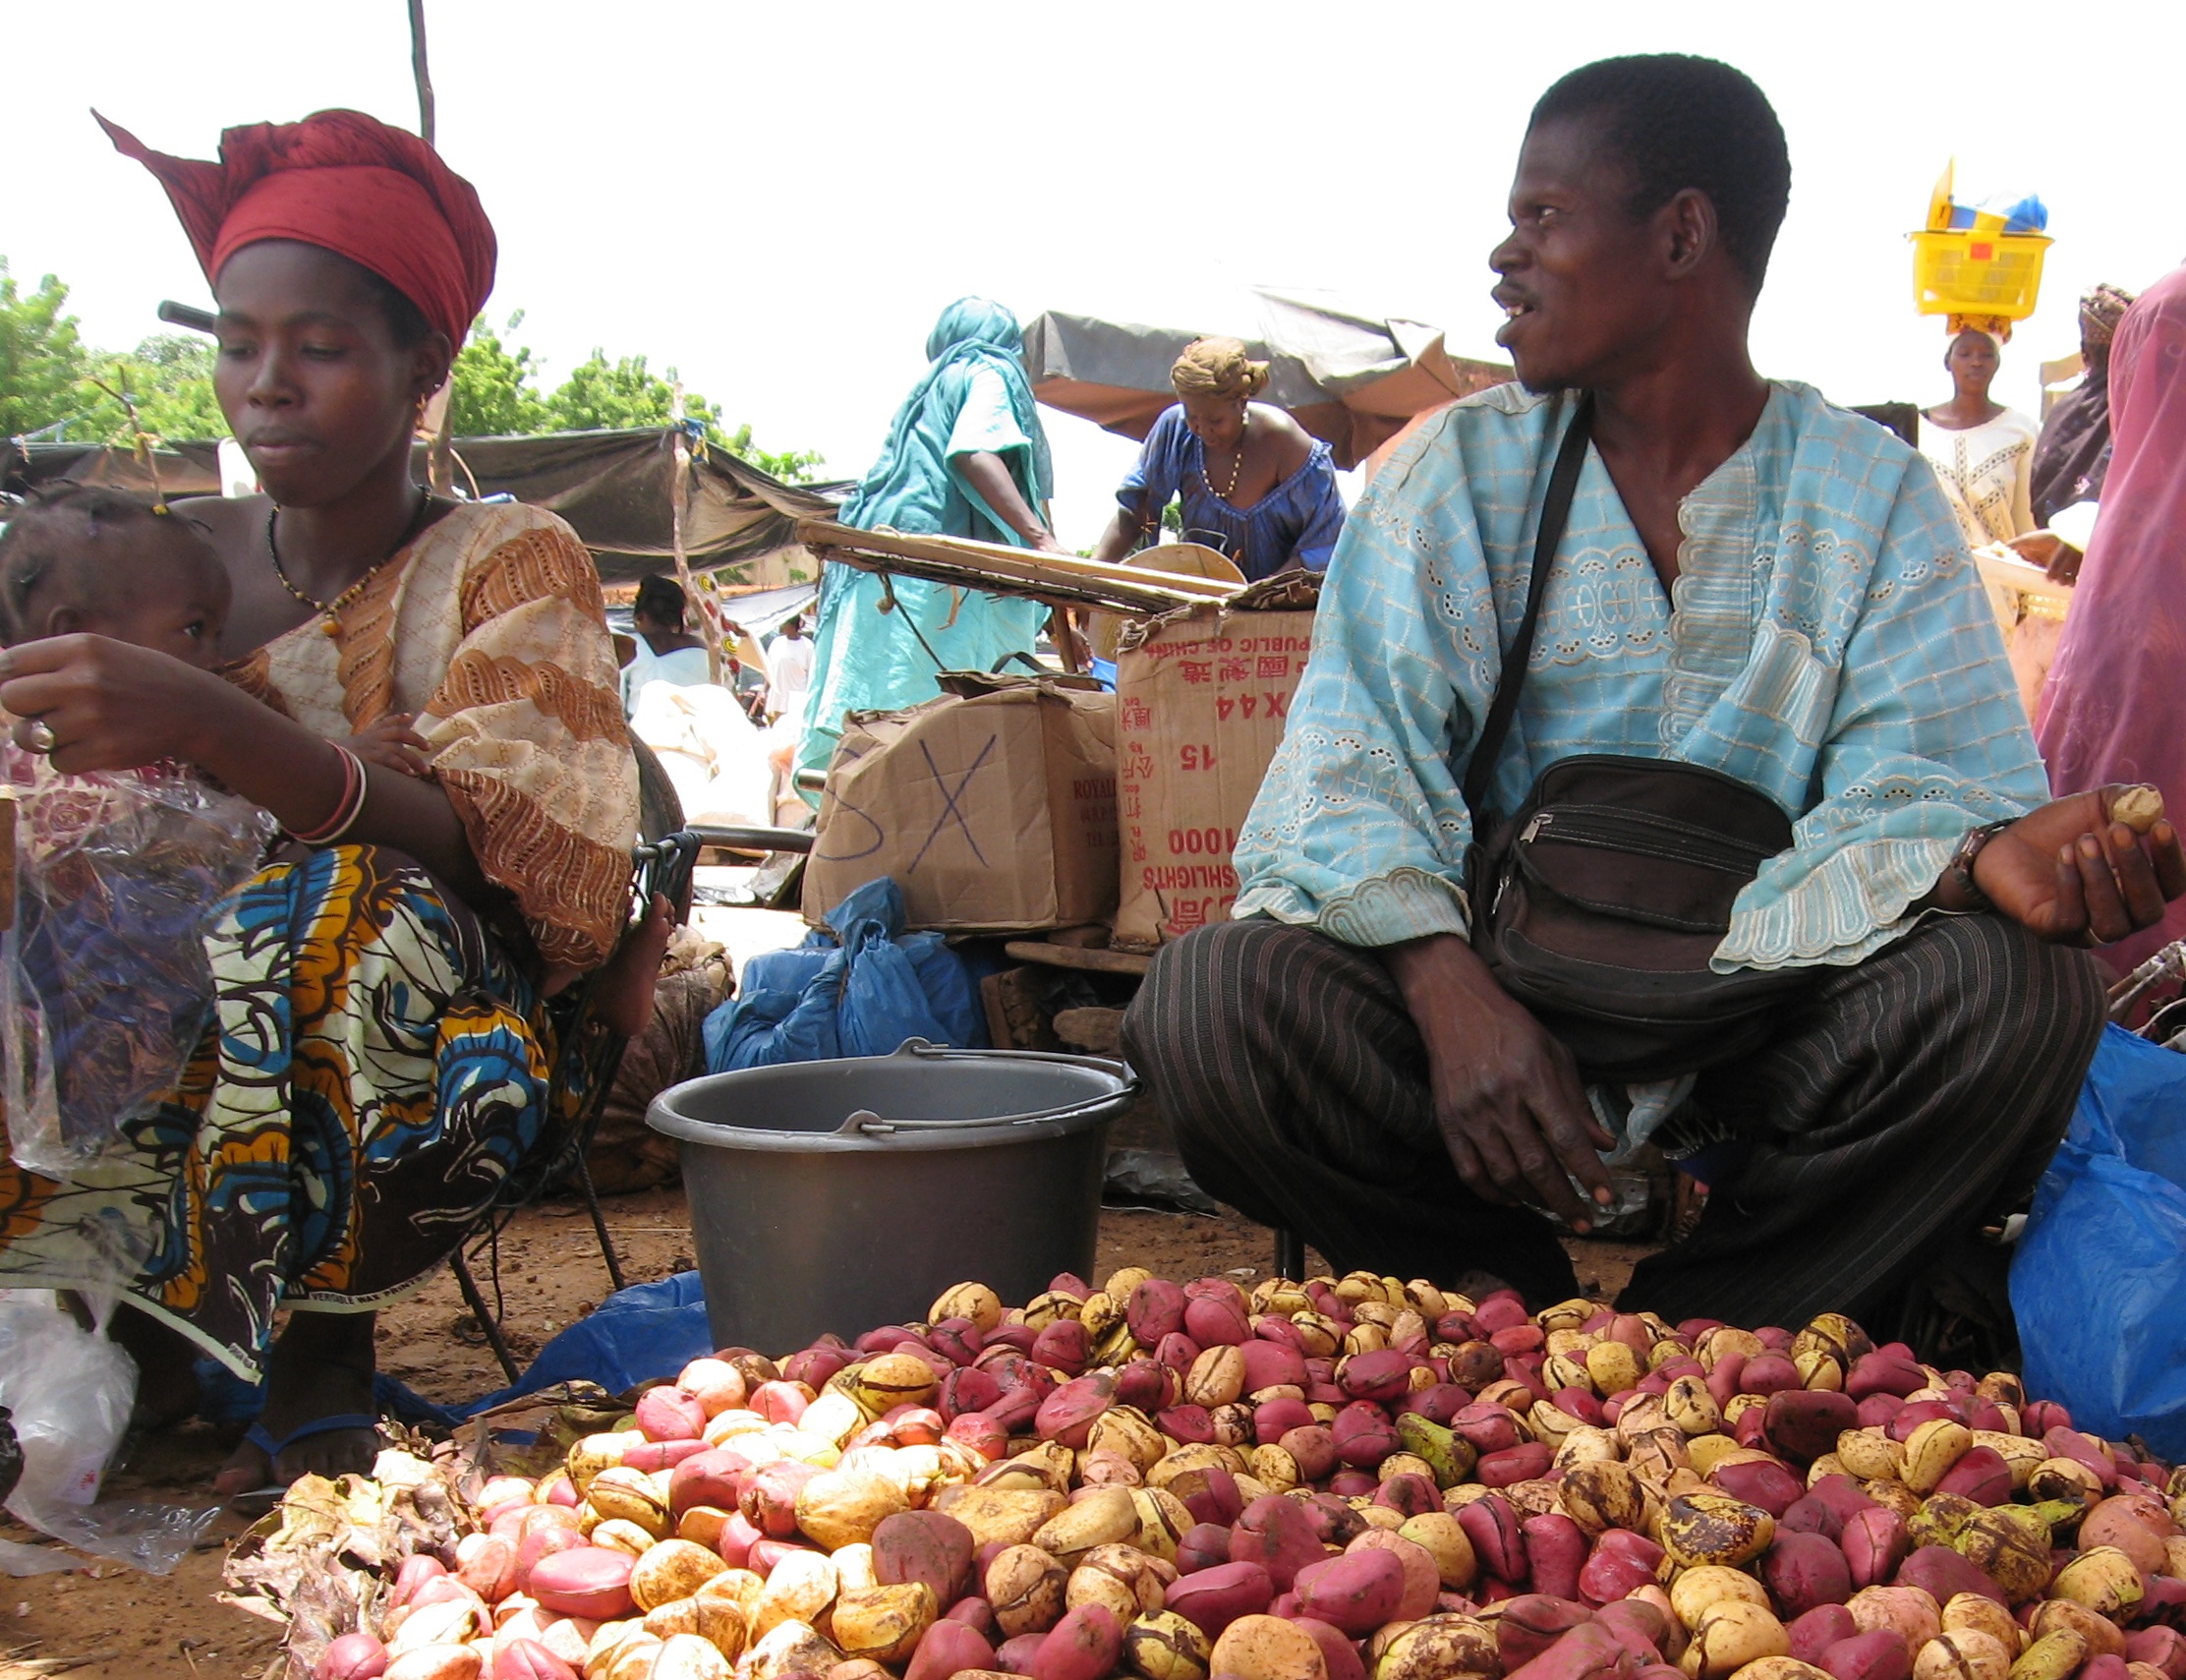 Kola nuts sold in market in Mali